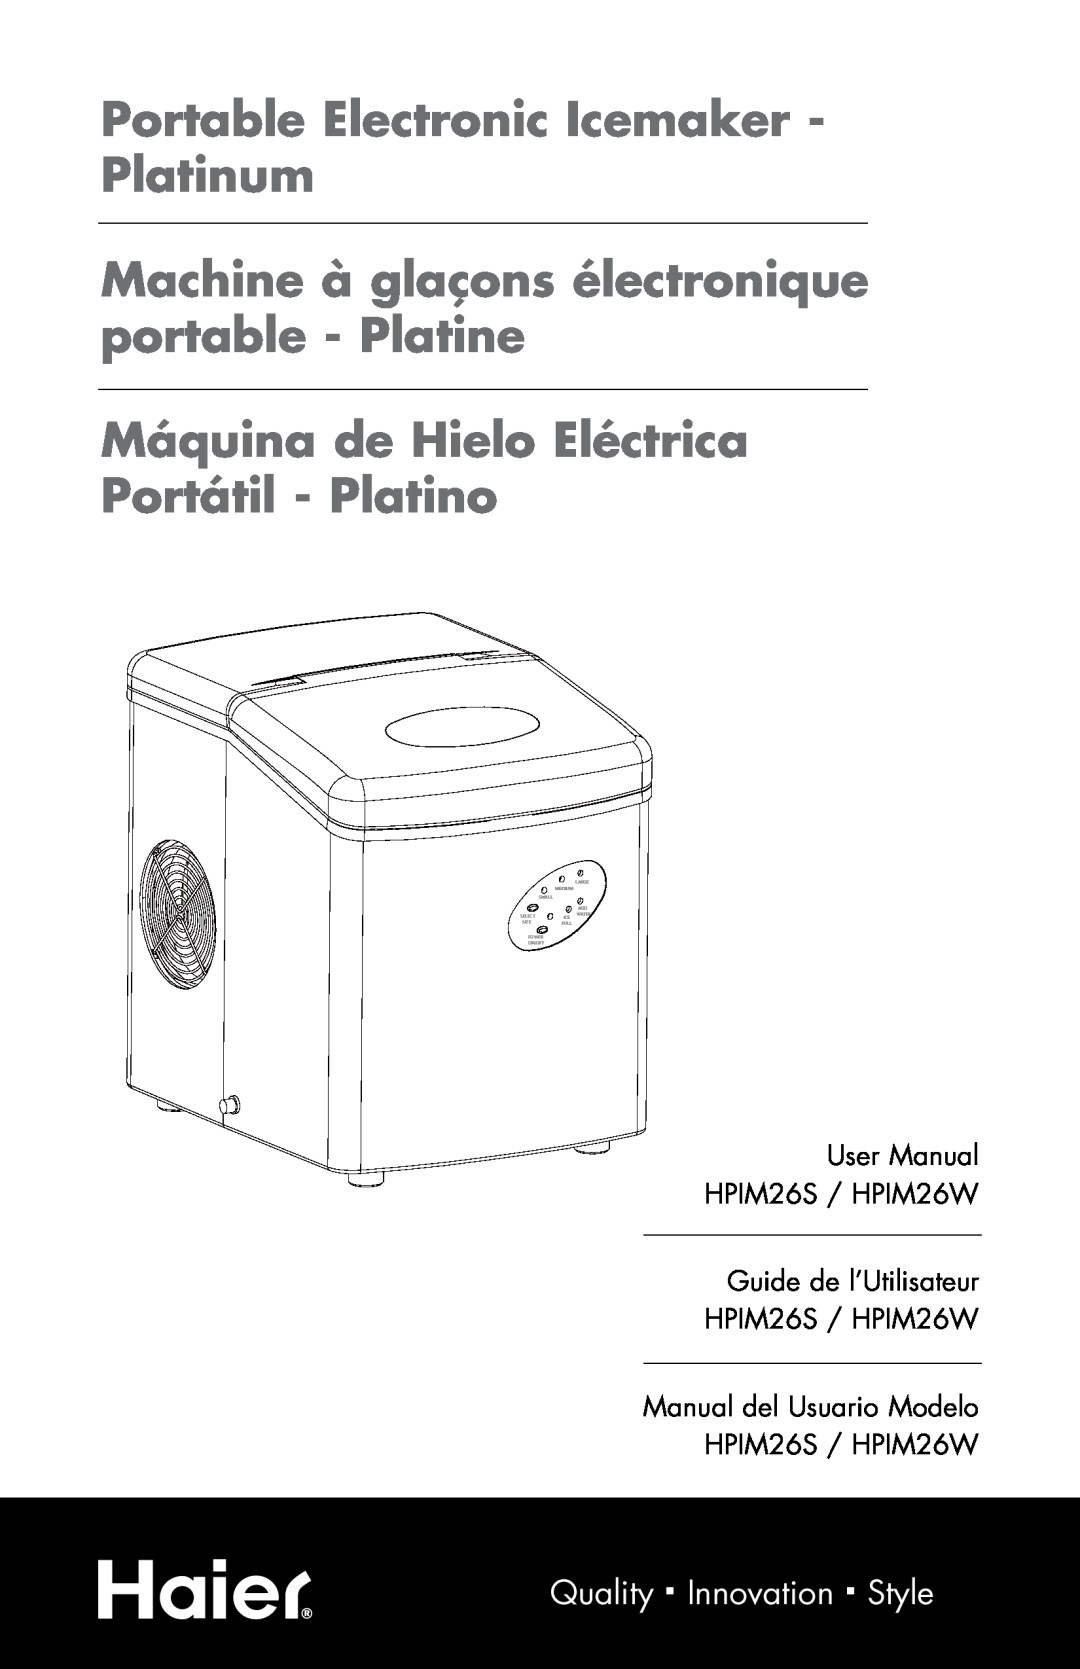 Haier HPIM26S user manual Portable Electronic Icemaker - Platinum, Machine à glaçons électronique portable - Platine, Size 